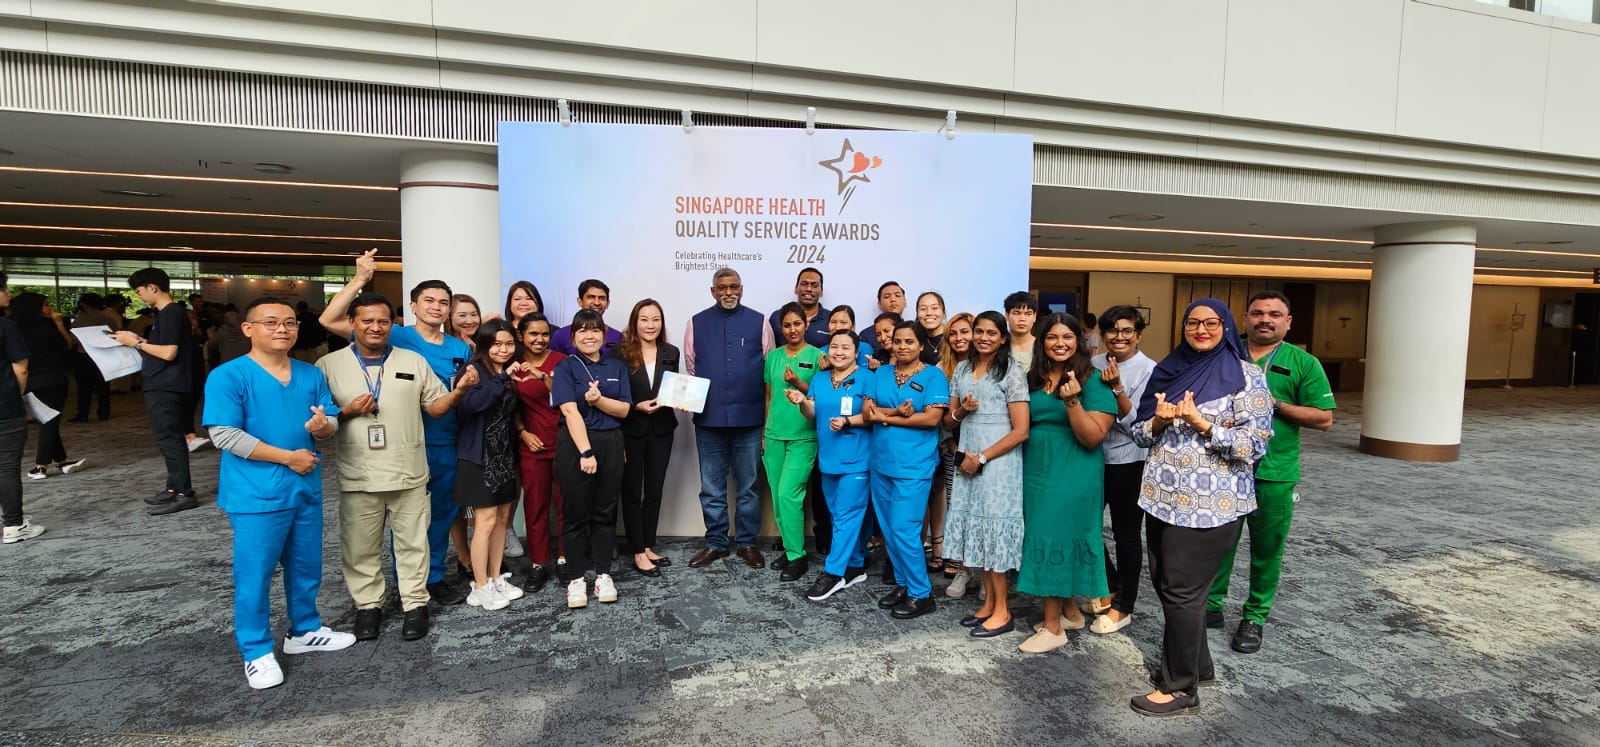 Singapore Health Quality Service Awards 2024